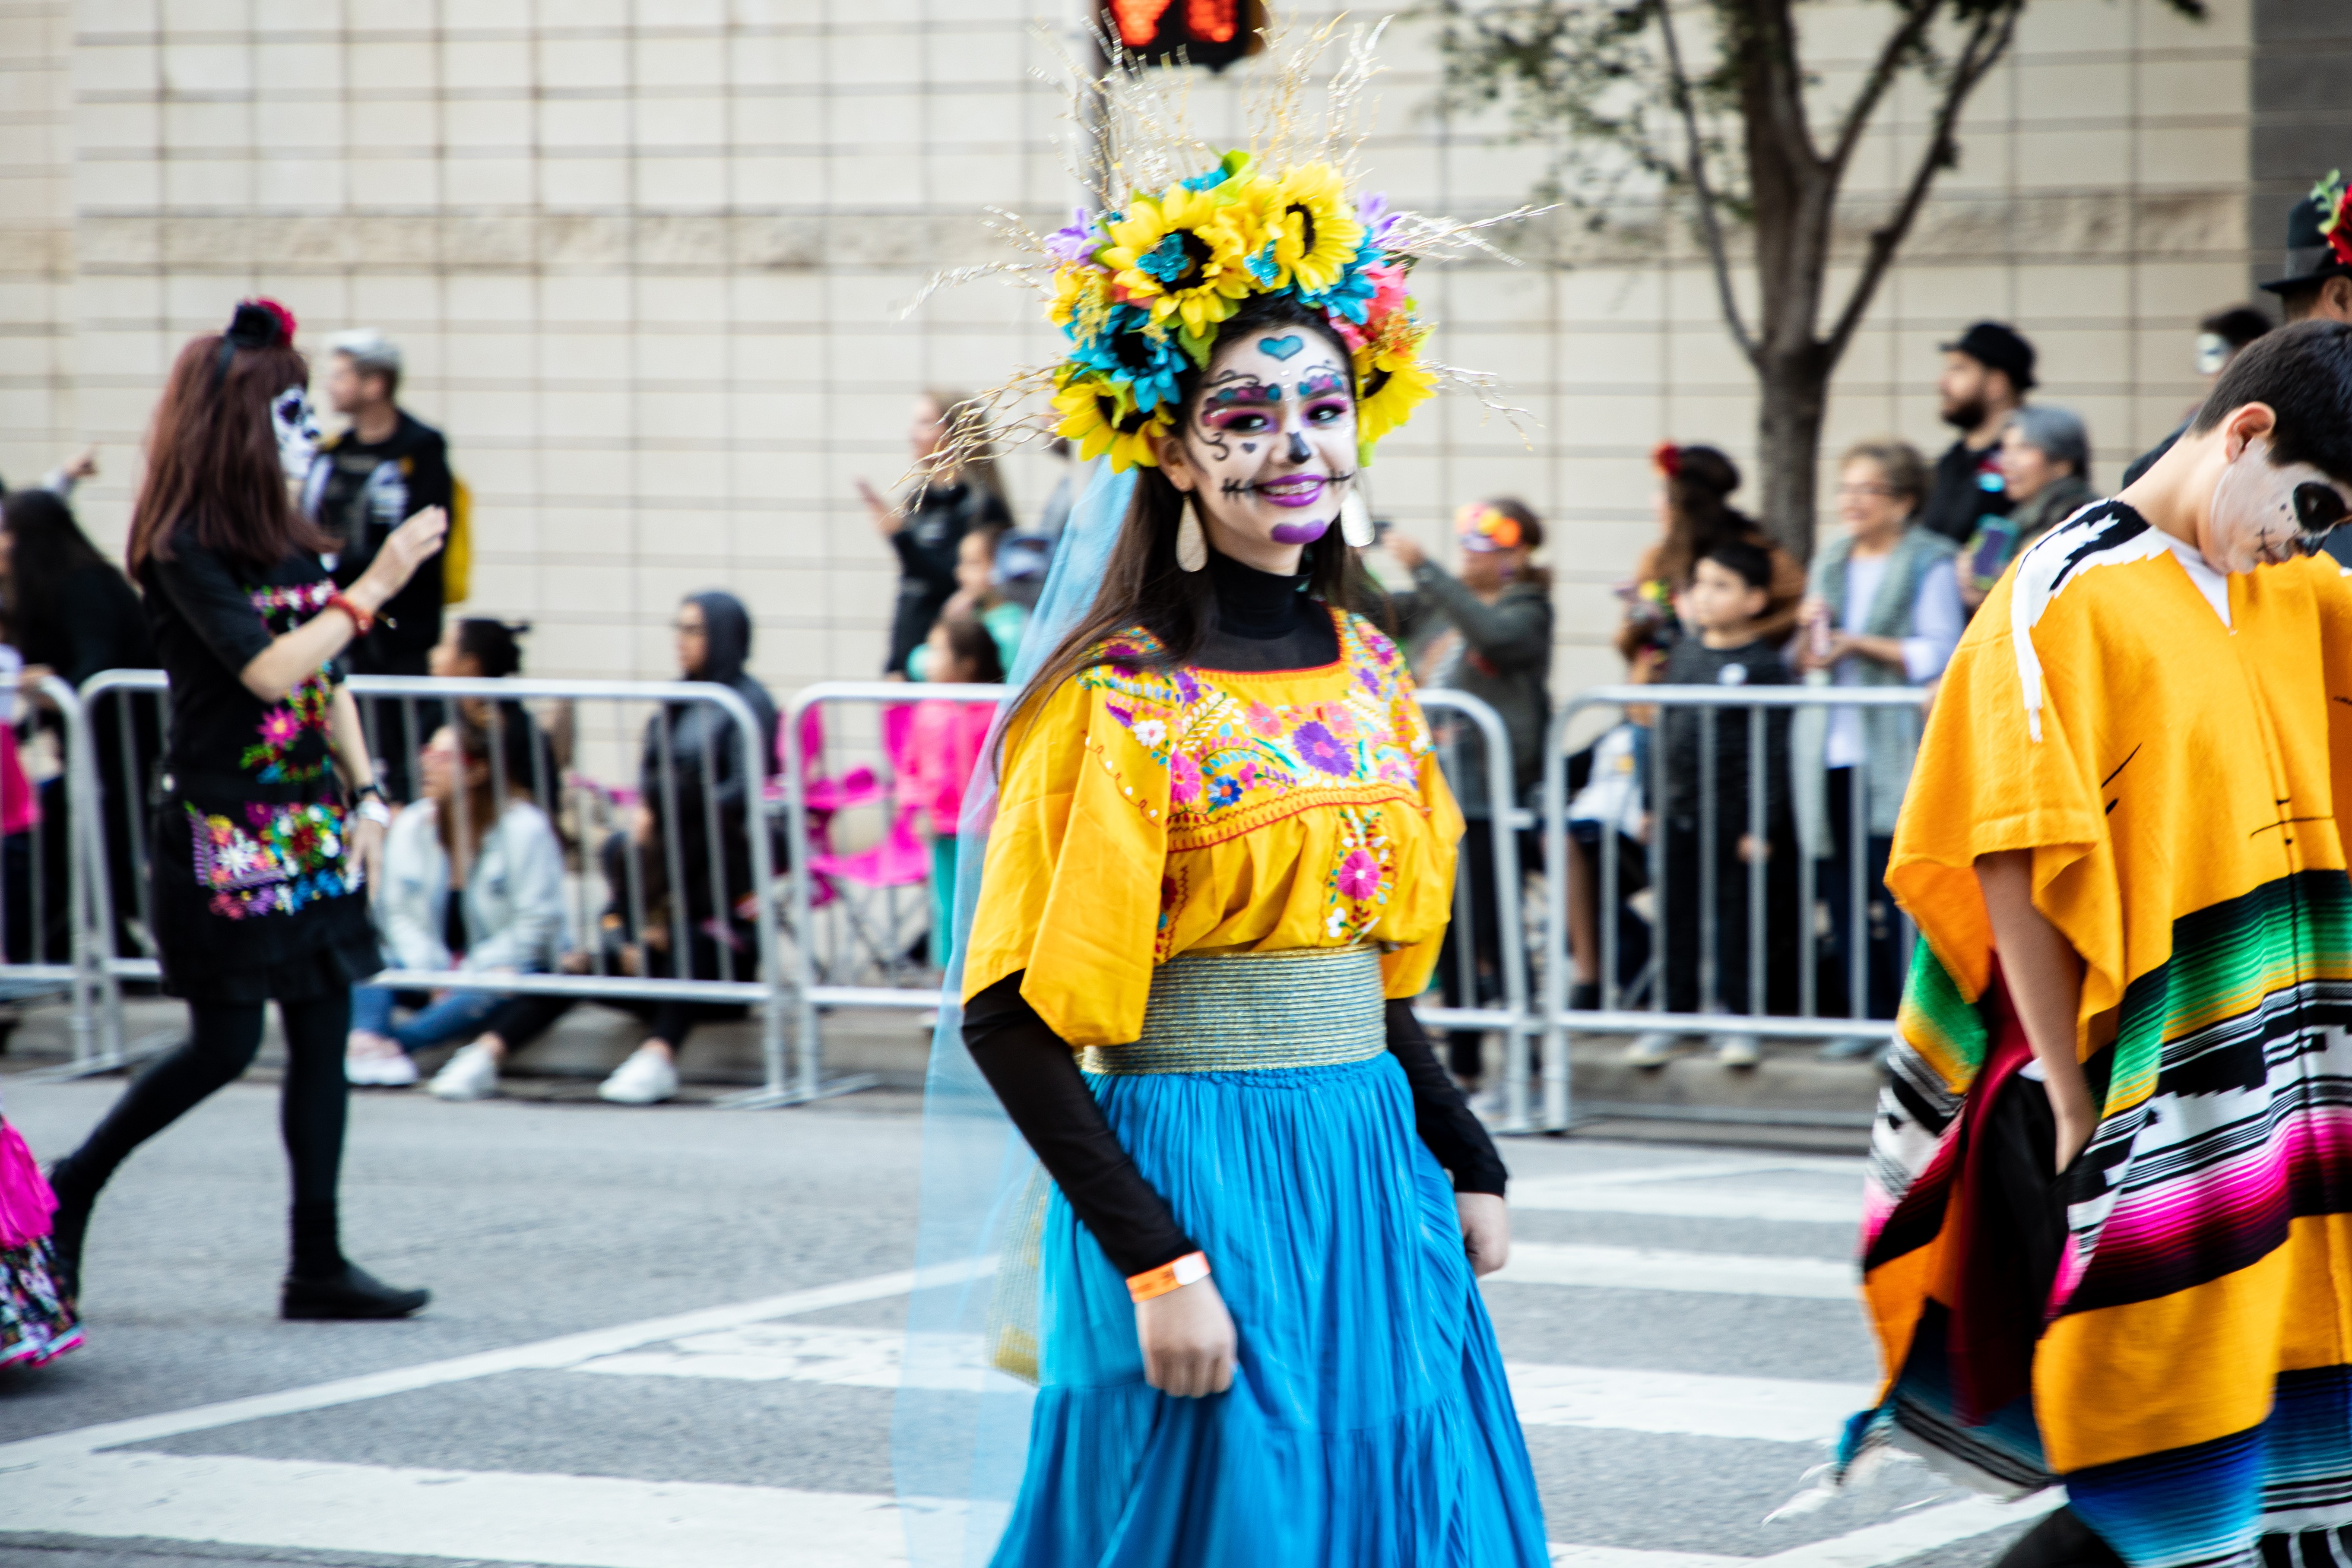 Ensaio fotográfico:Desfile do Dia de los Muertos em Dallas 